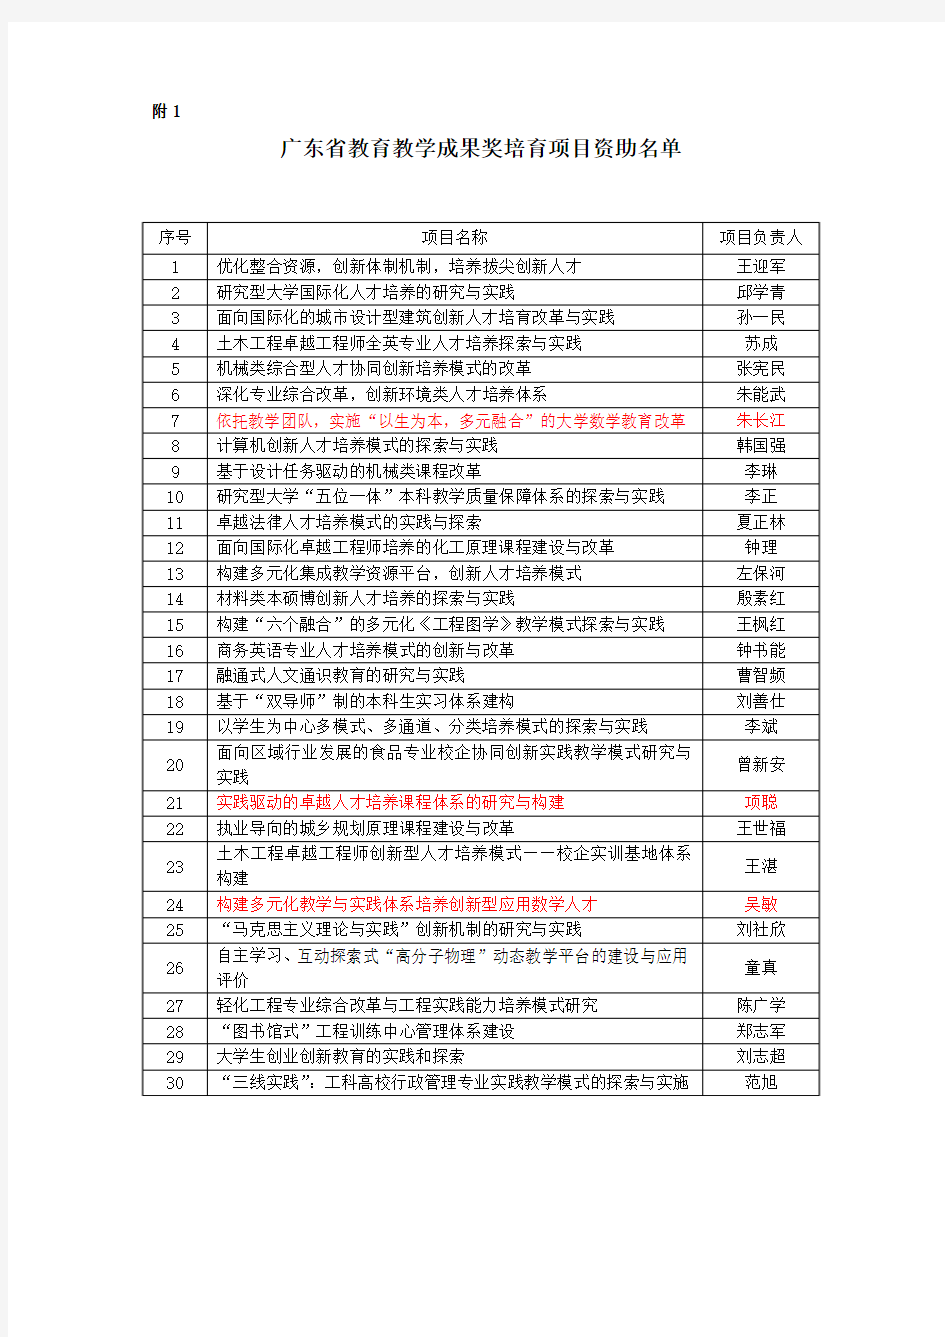 2015广东省教育教学成果奖培育项目资助名单